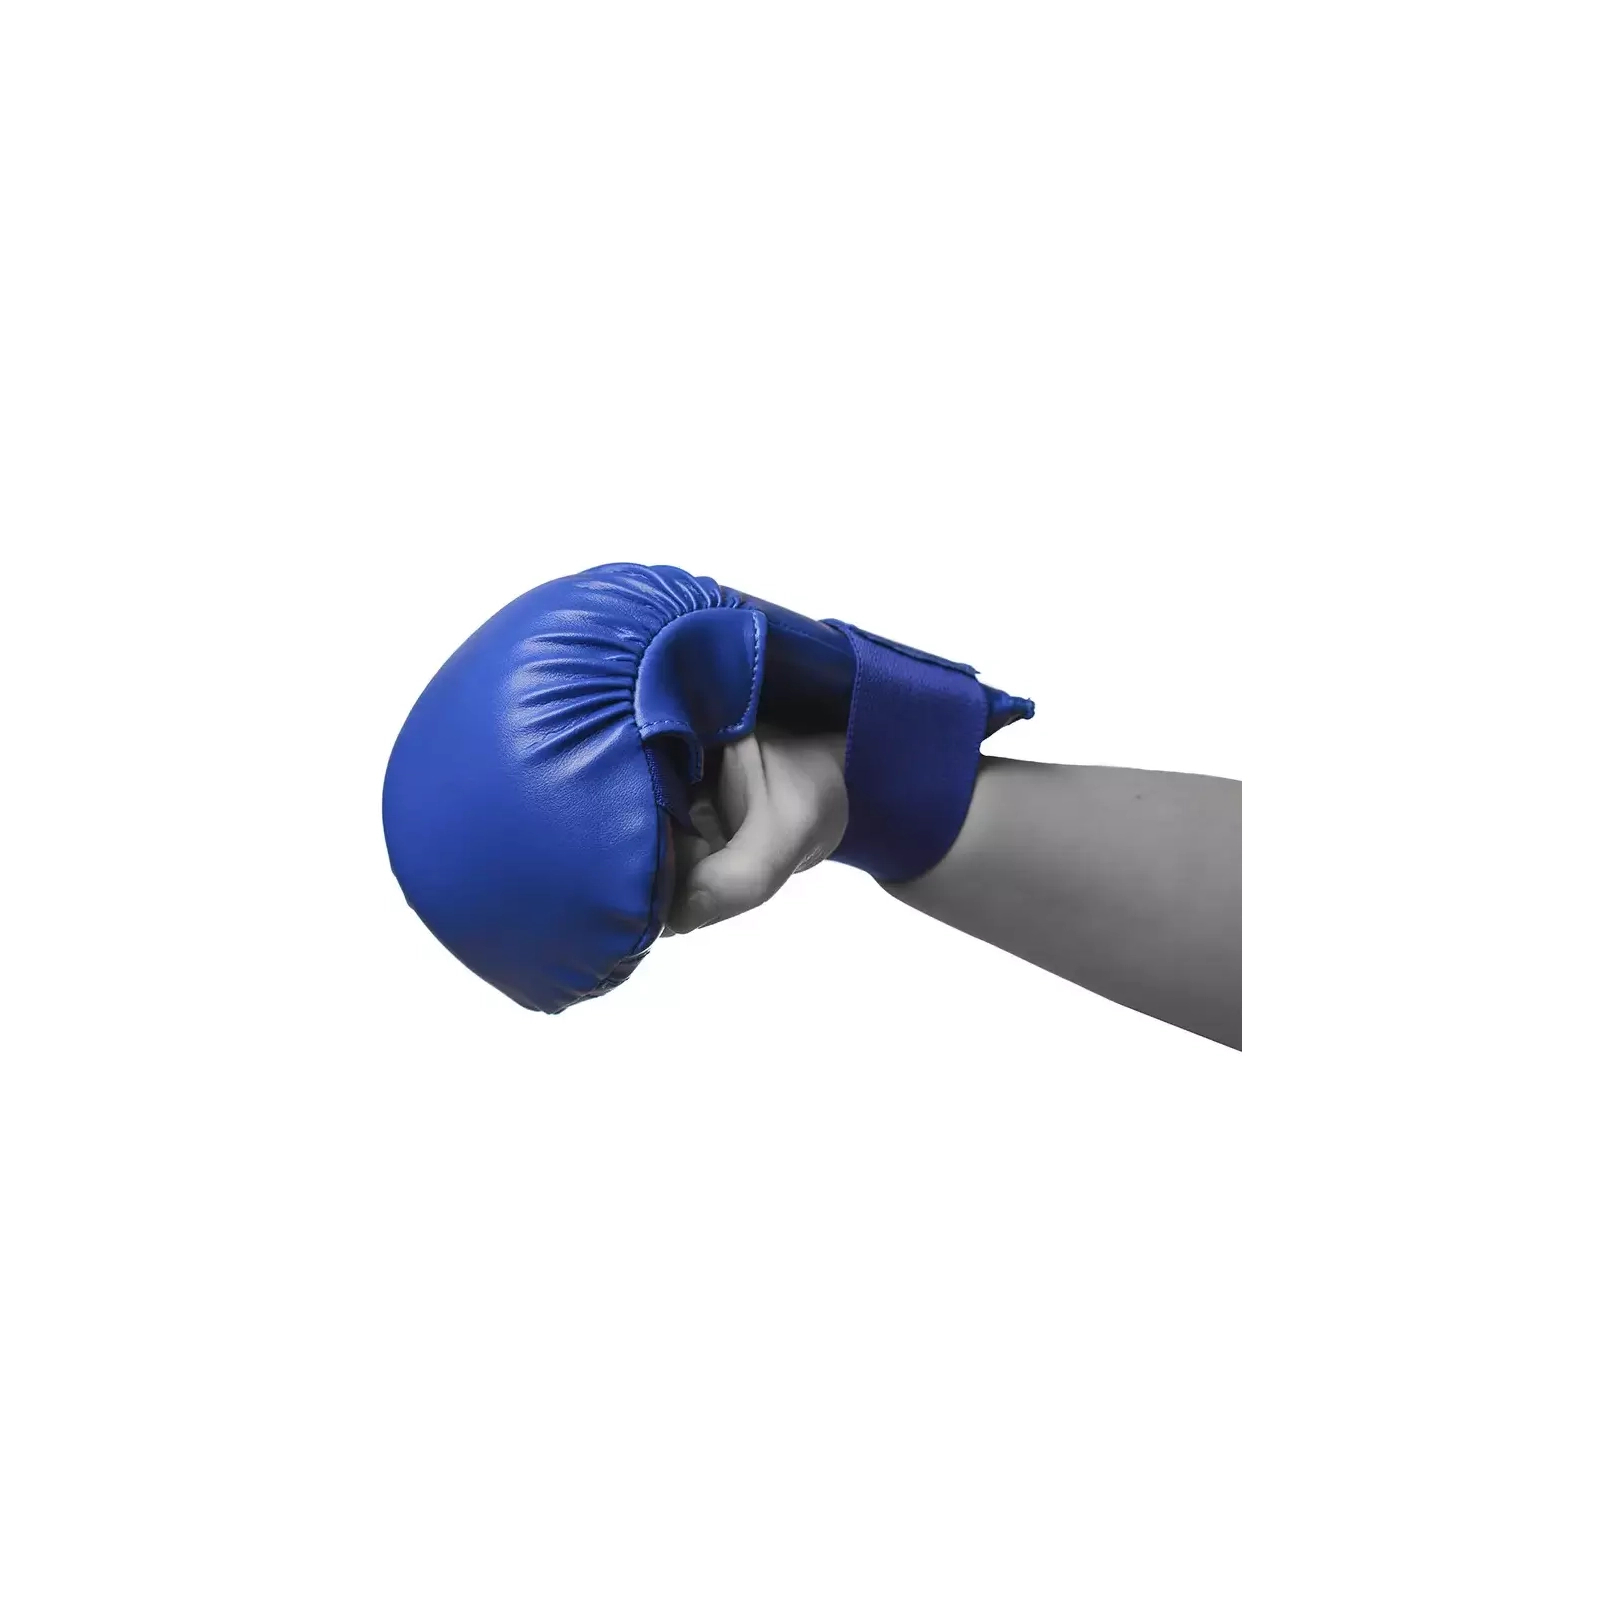 Рукавички для карате PowerPlay 3027 Сині S (PP_3027_S_Blue) зображення 4